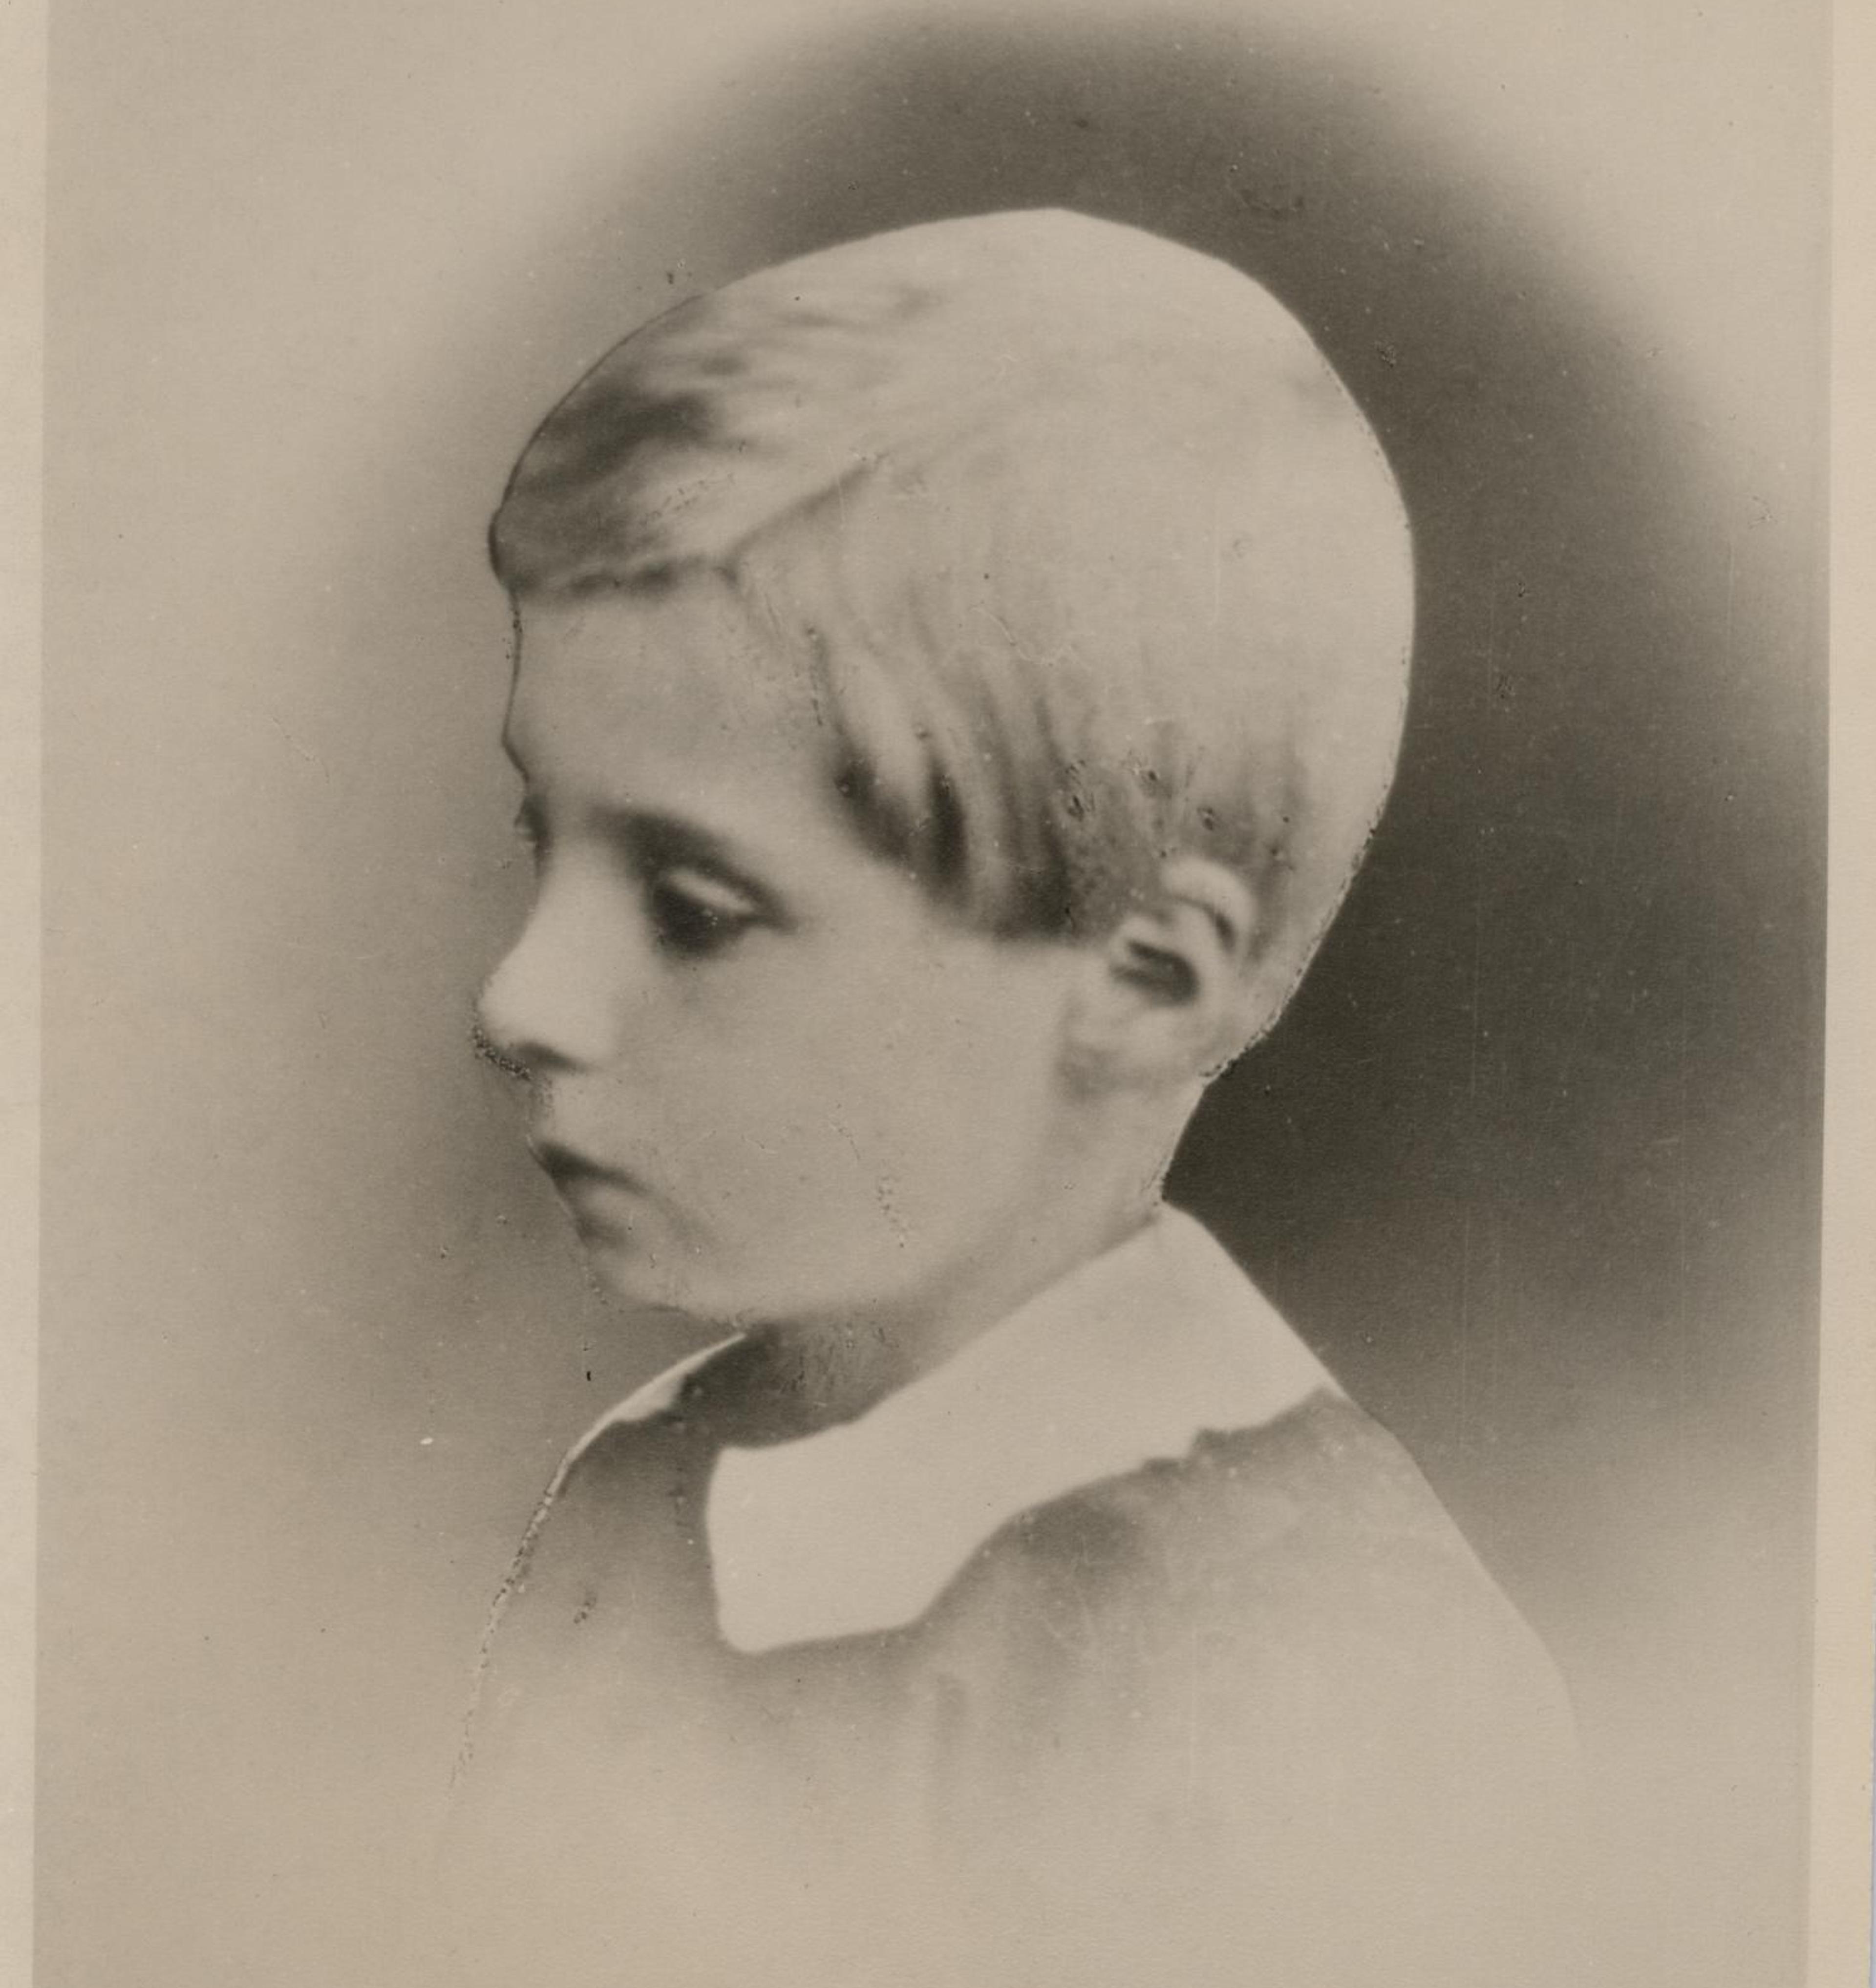 Et eldre fotografi av Edvard Grieg som liten gutt, tatt i profil.